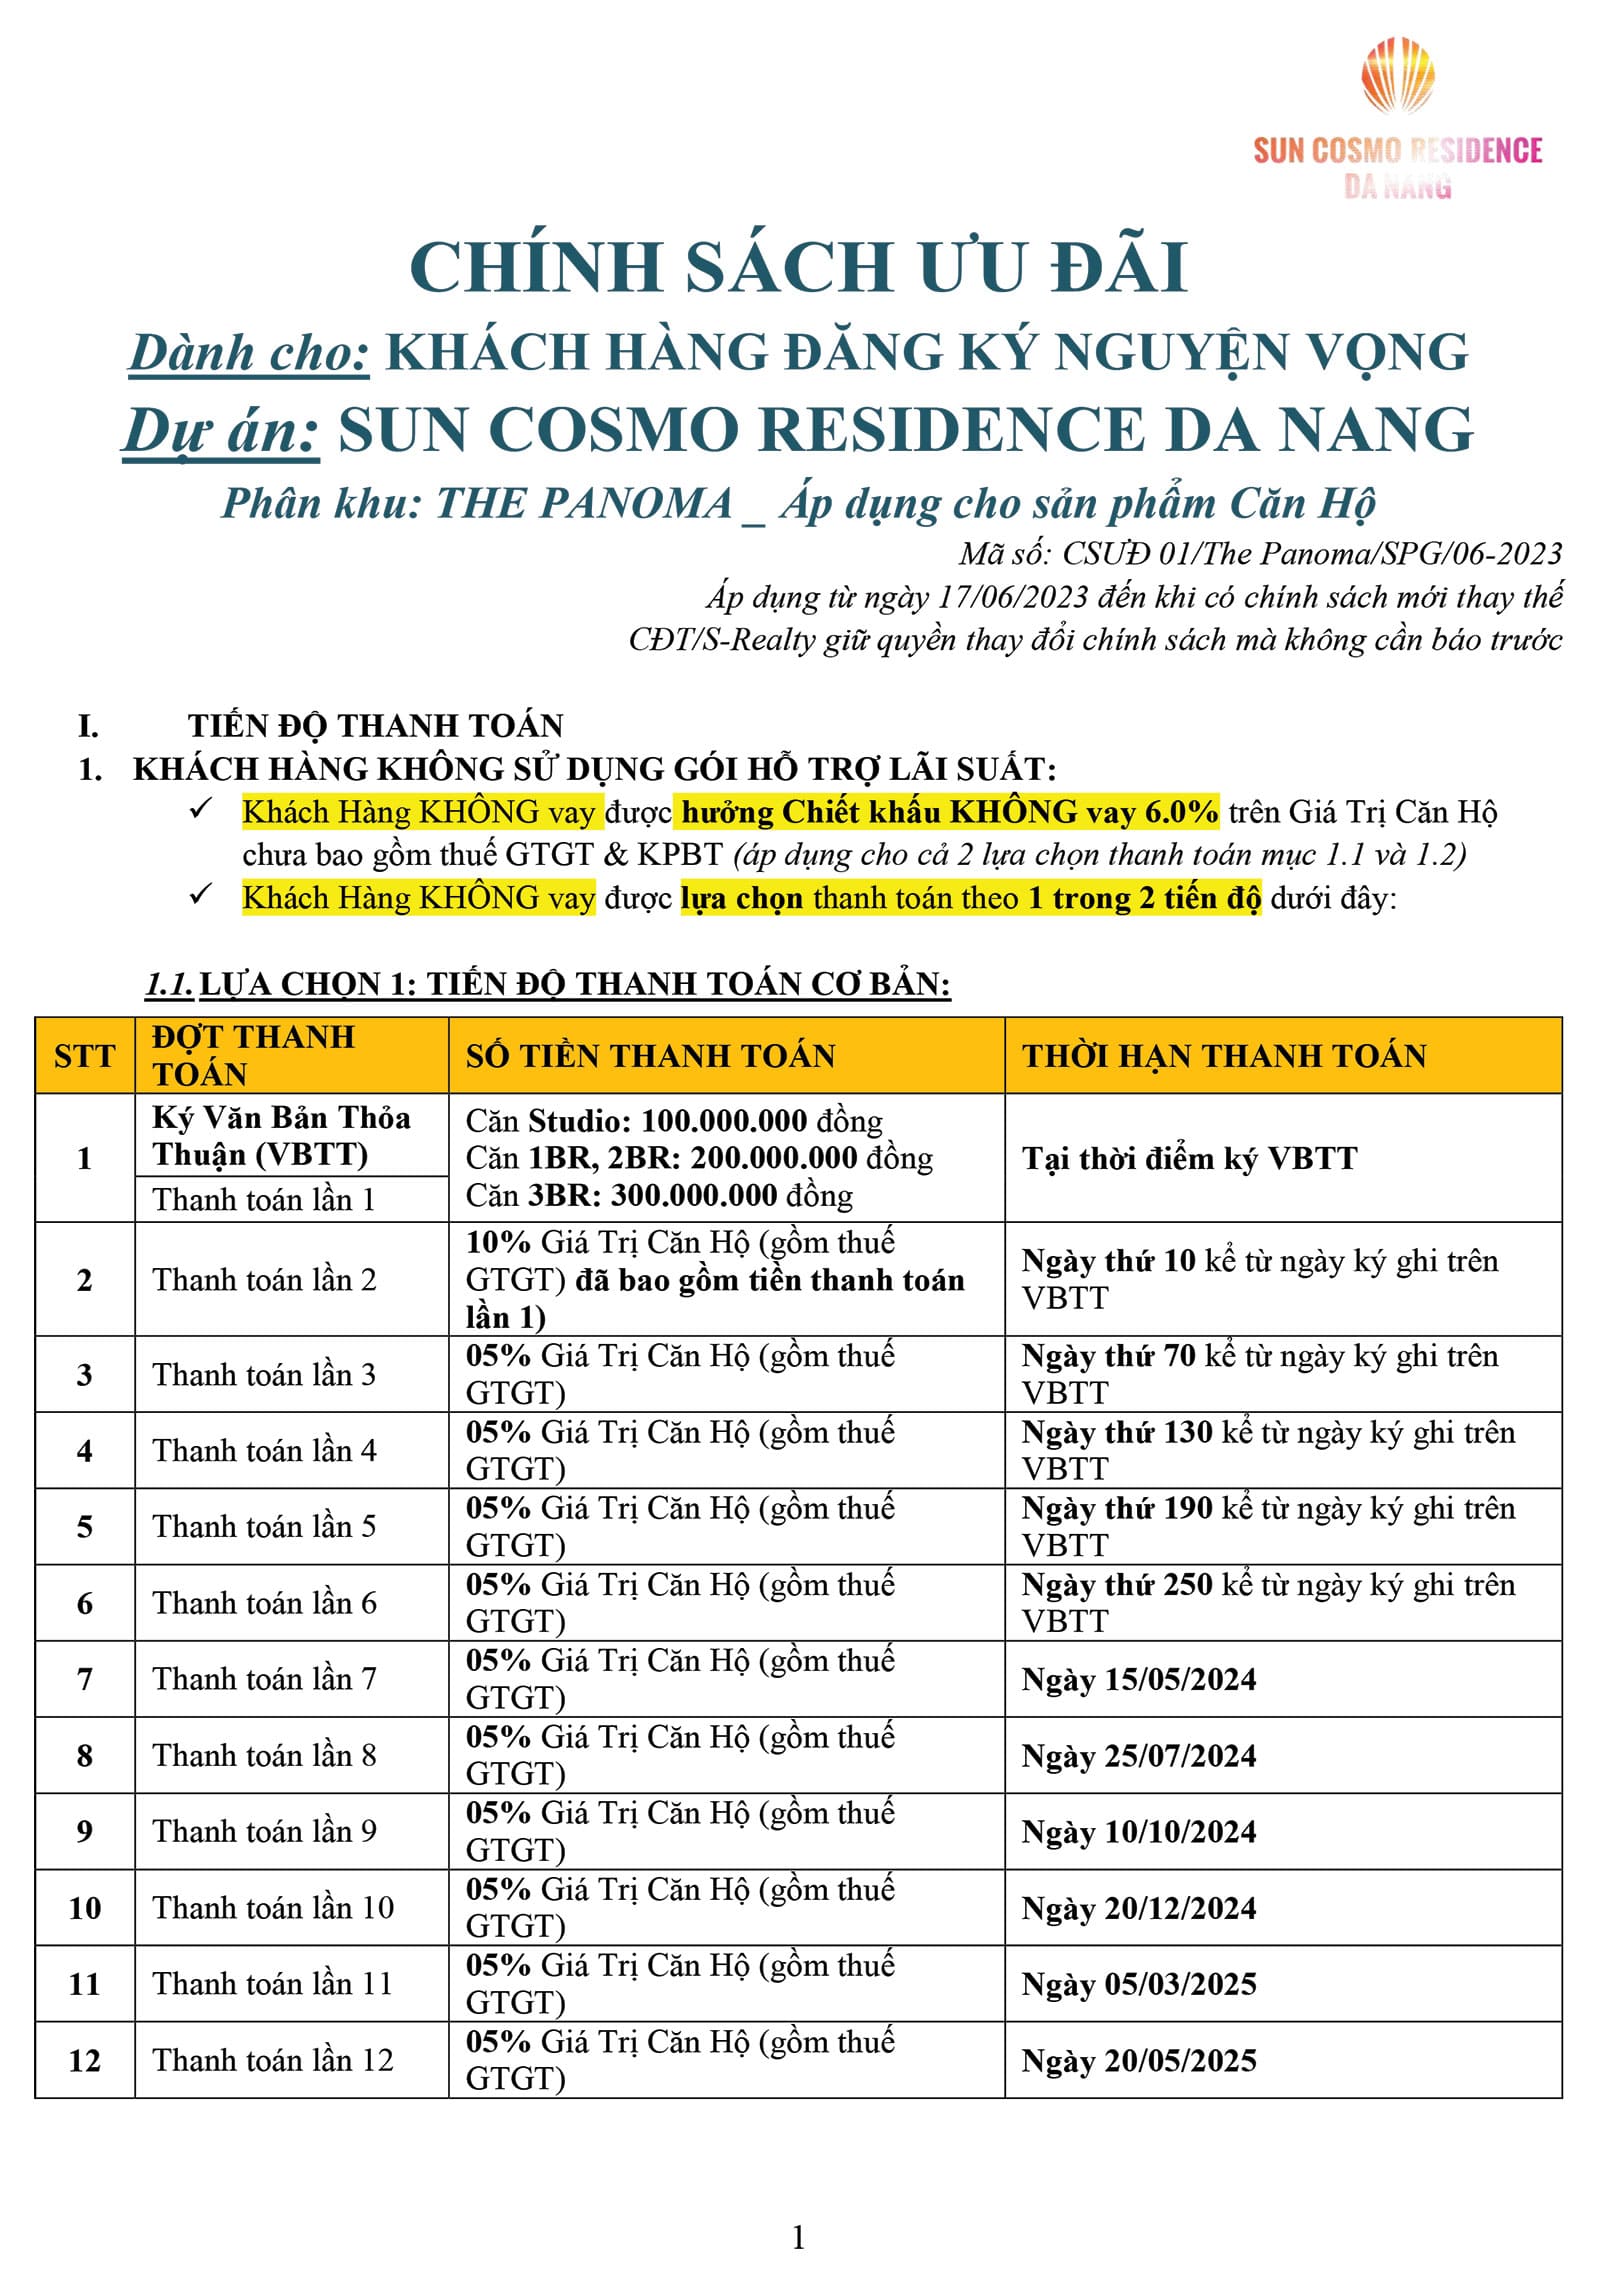 Chính sách ưu đãi căn hộ The Panoma - Sun Cosmo Residence tháng 06 năm 2023 - Trang 1.